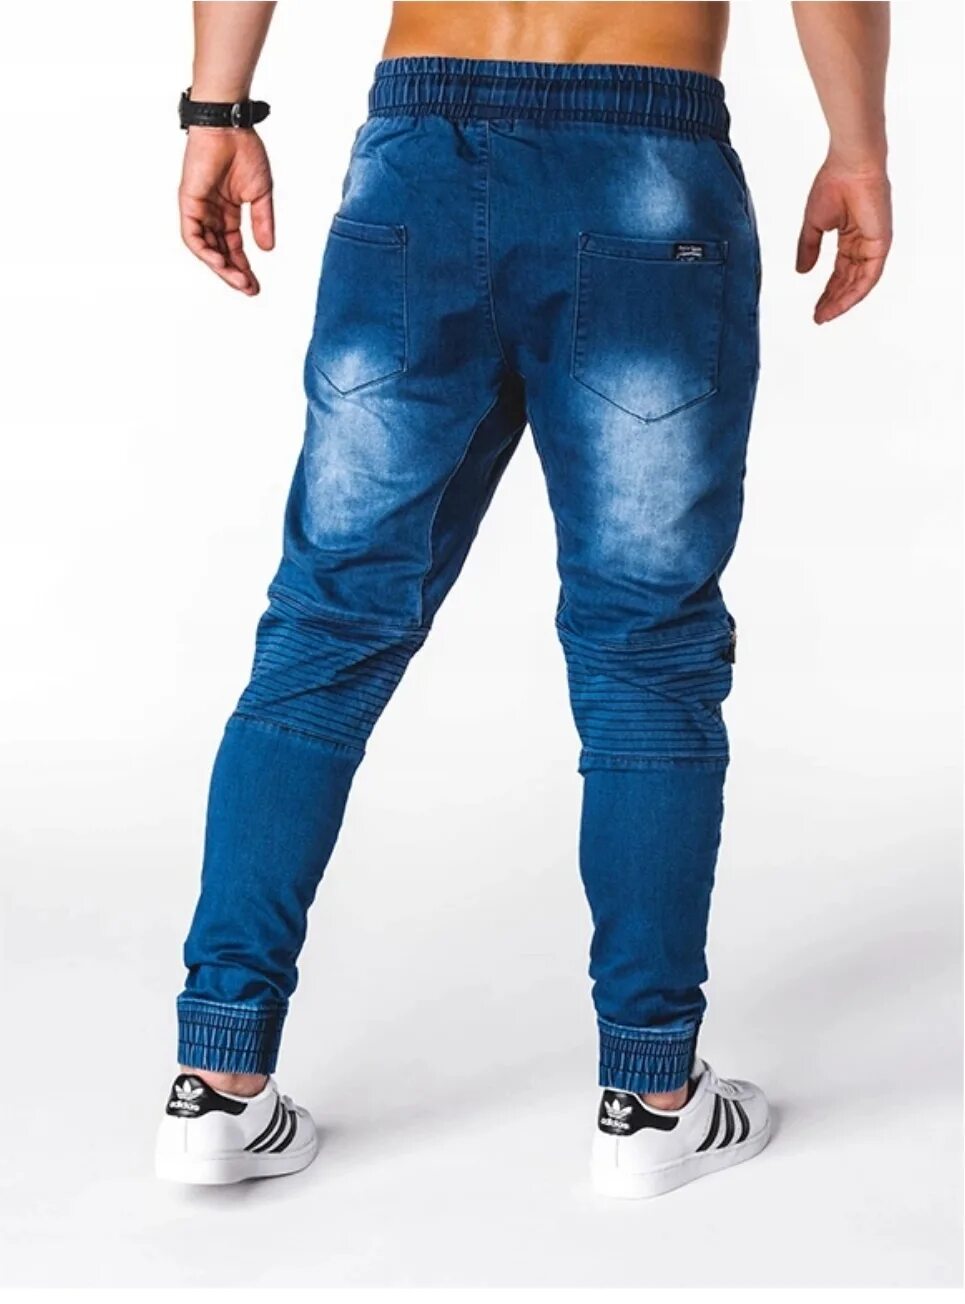 Топ джинсы мужские. Джоггеры мужские джинсовые. Джинсы на манжетах. Джинсы джоггеры мужские голубые. Джинсы джоггеры синий.